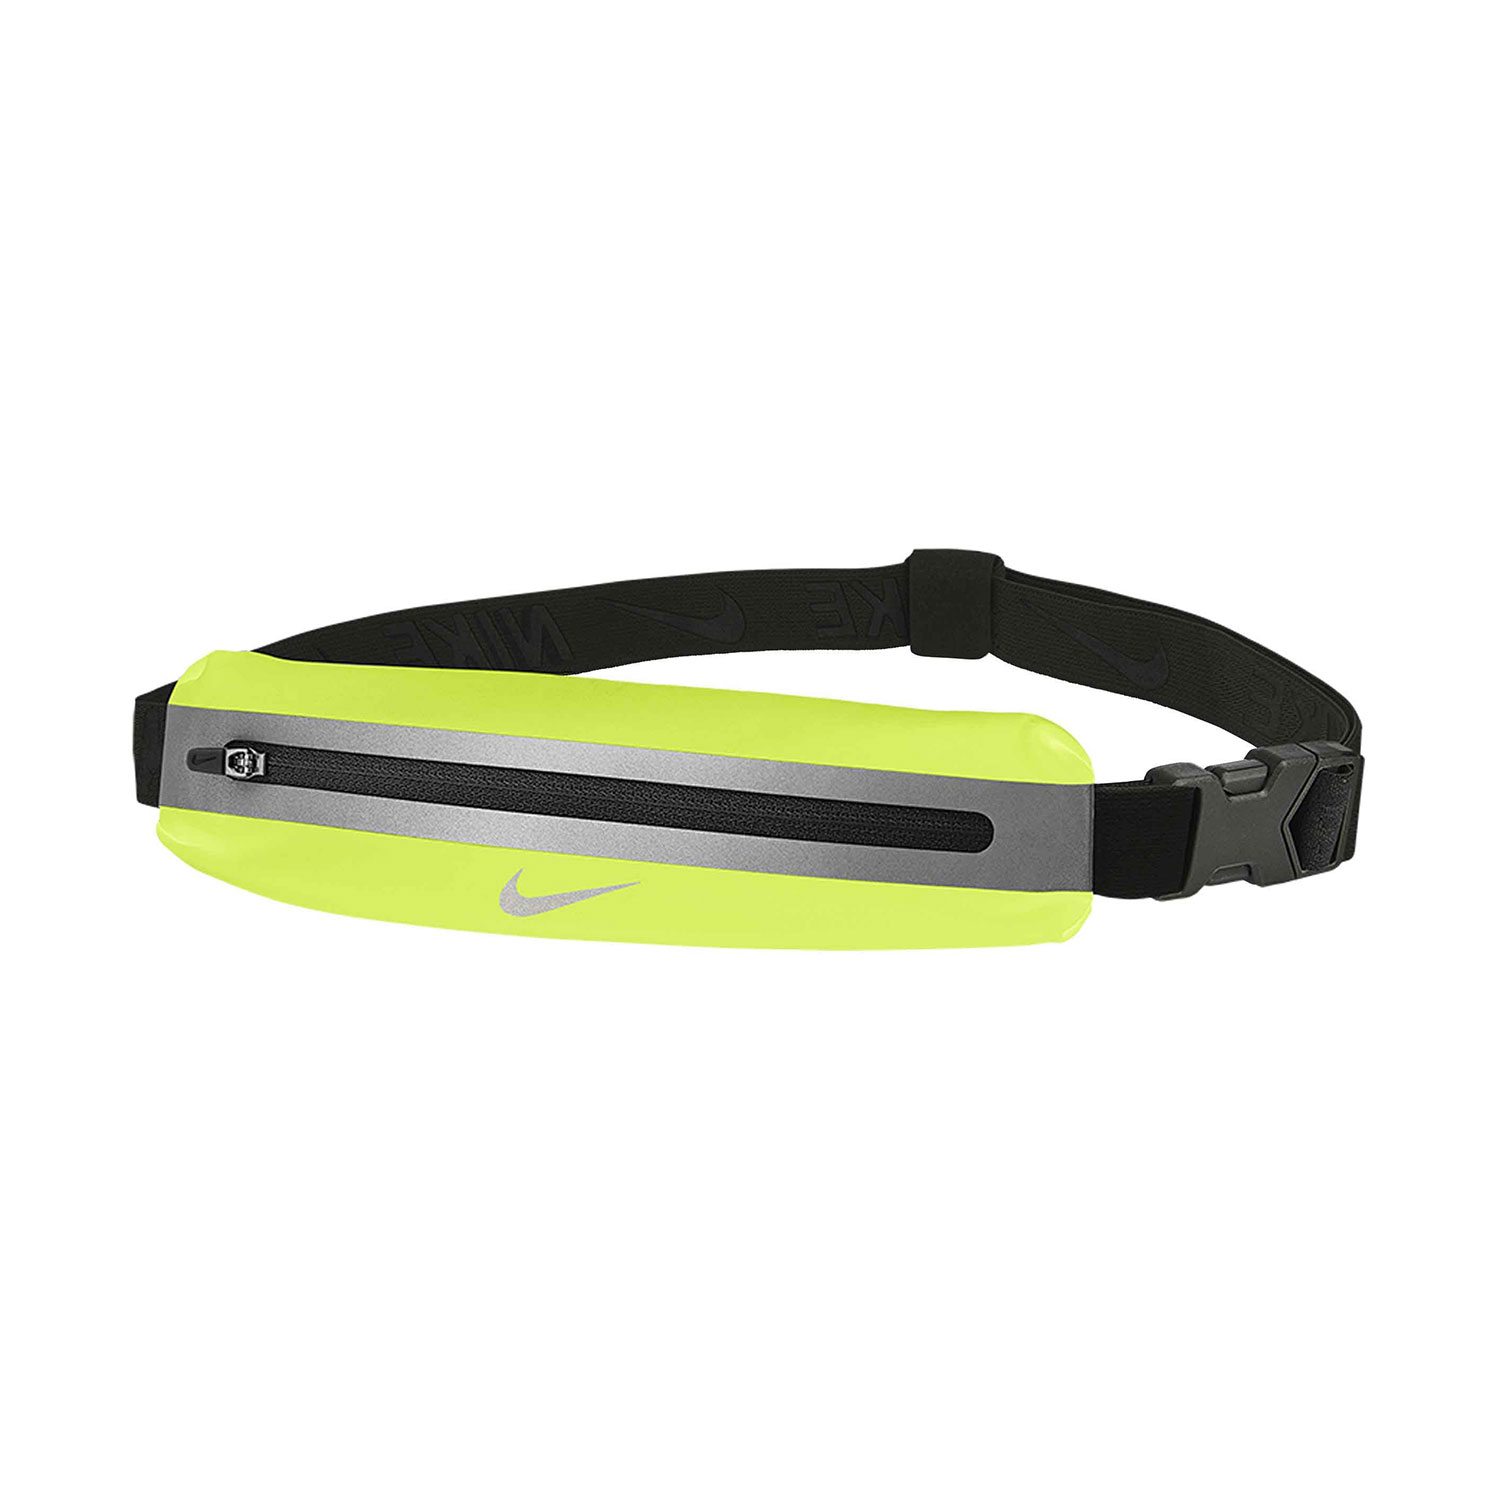 Nike Slim 3.0 Cintura Porta Oggetti - Volt/Black/Silver